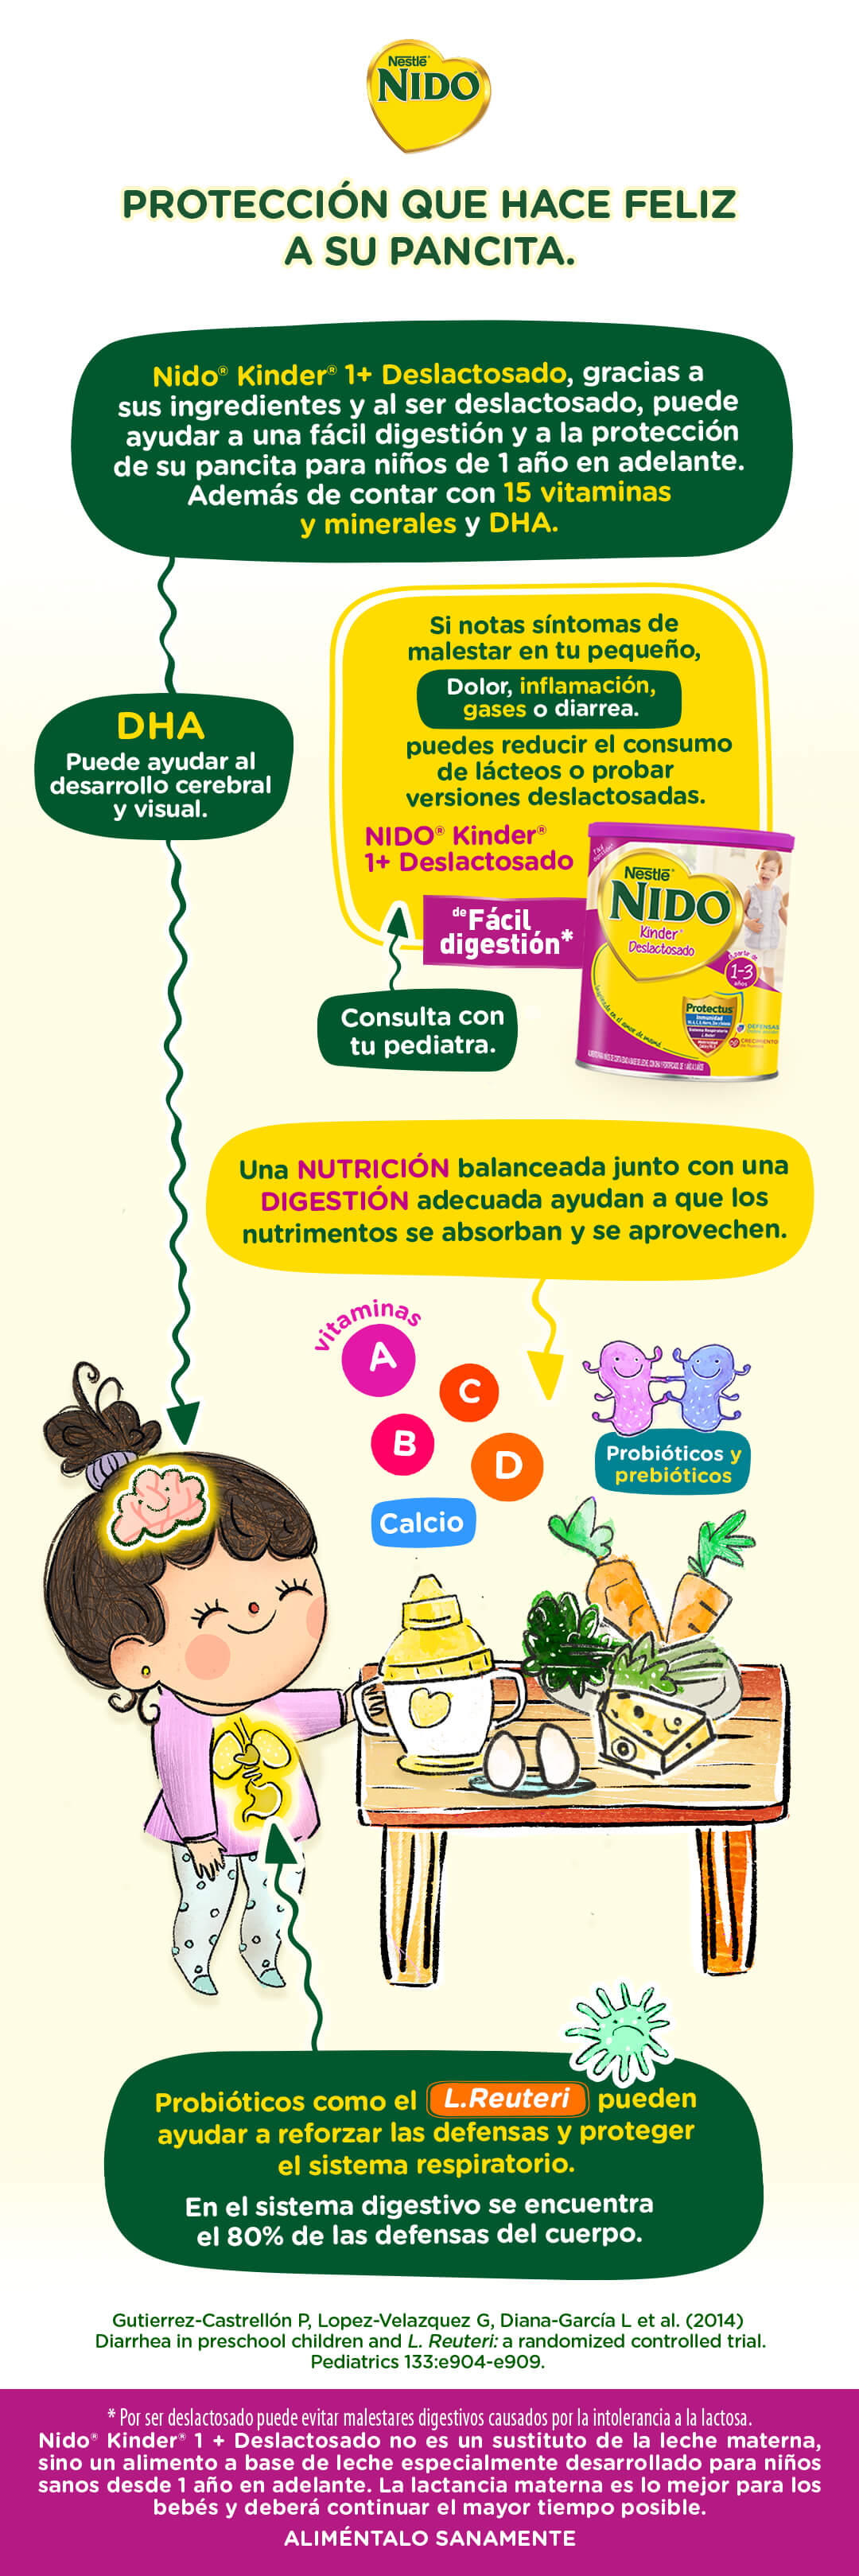 Nestlé Nido Kinder deslactosado protección que hace feliz a su pancita